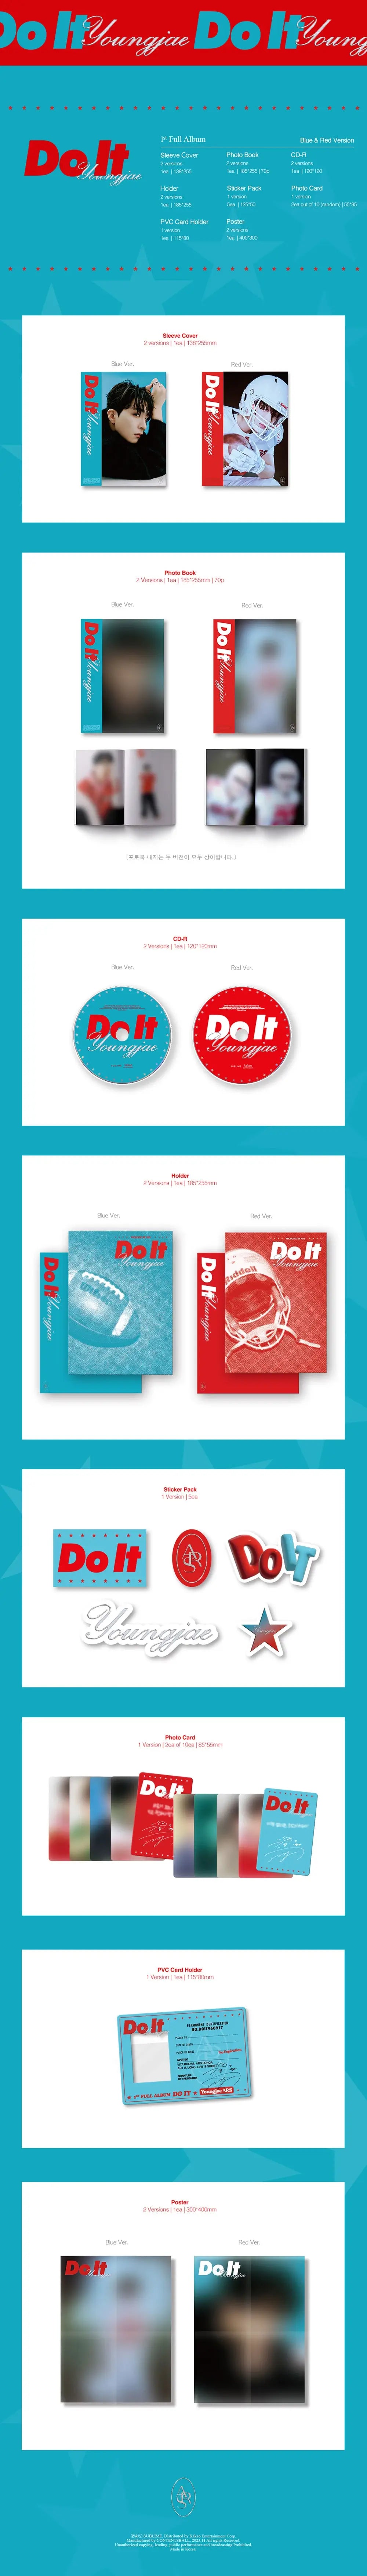 ヨンジェ - Do It (1st Full Album)